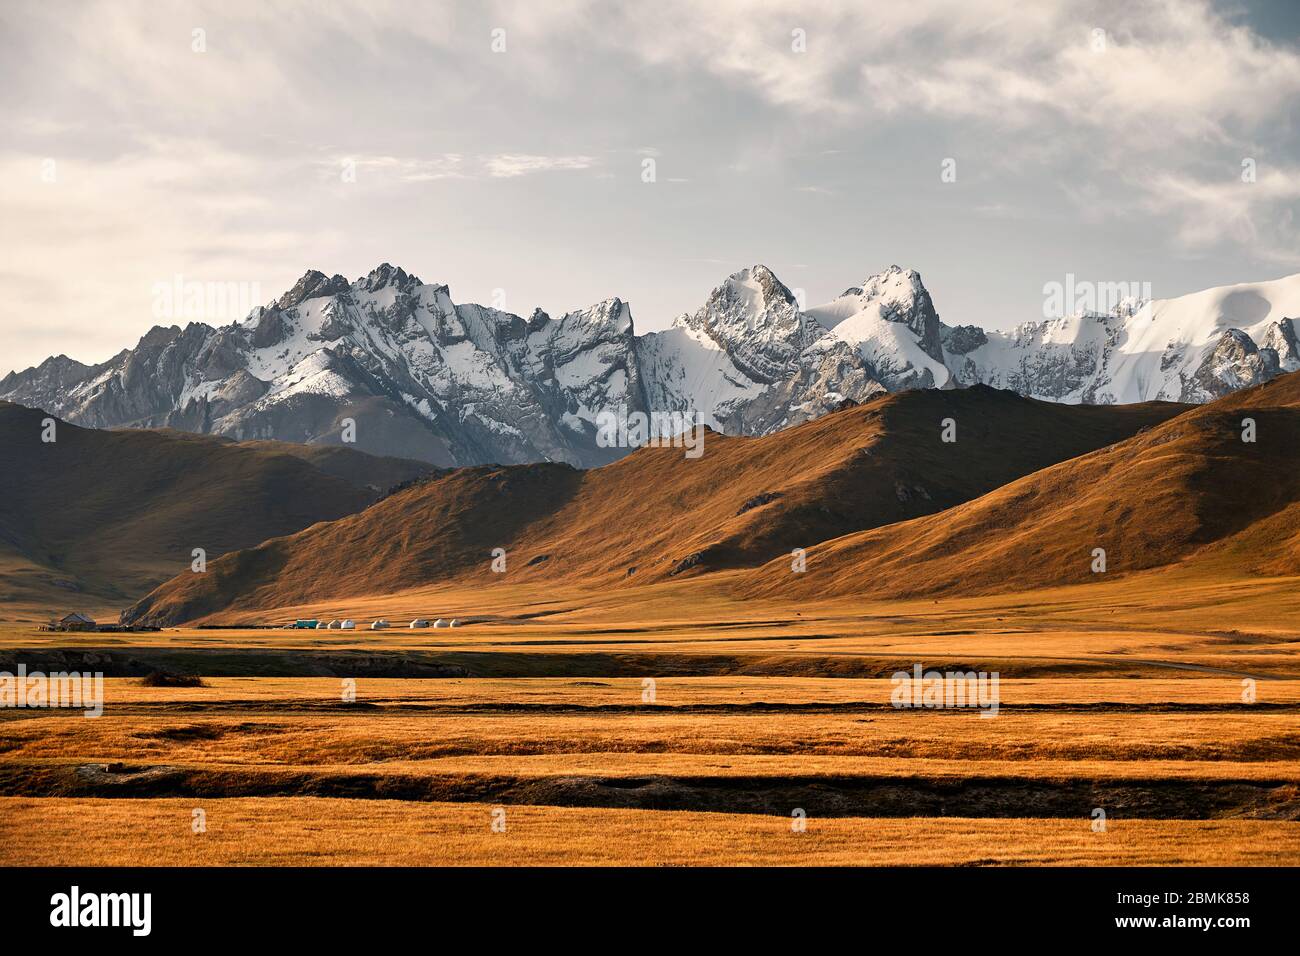 De beaux paysages de montagnes aux sommets enneigés et camp de yourte dans la vallée près de Kel Suu Lake dans la région de Naryn, Kirghizistan Banque D'Images